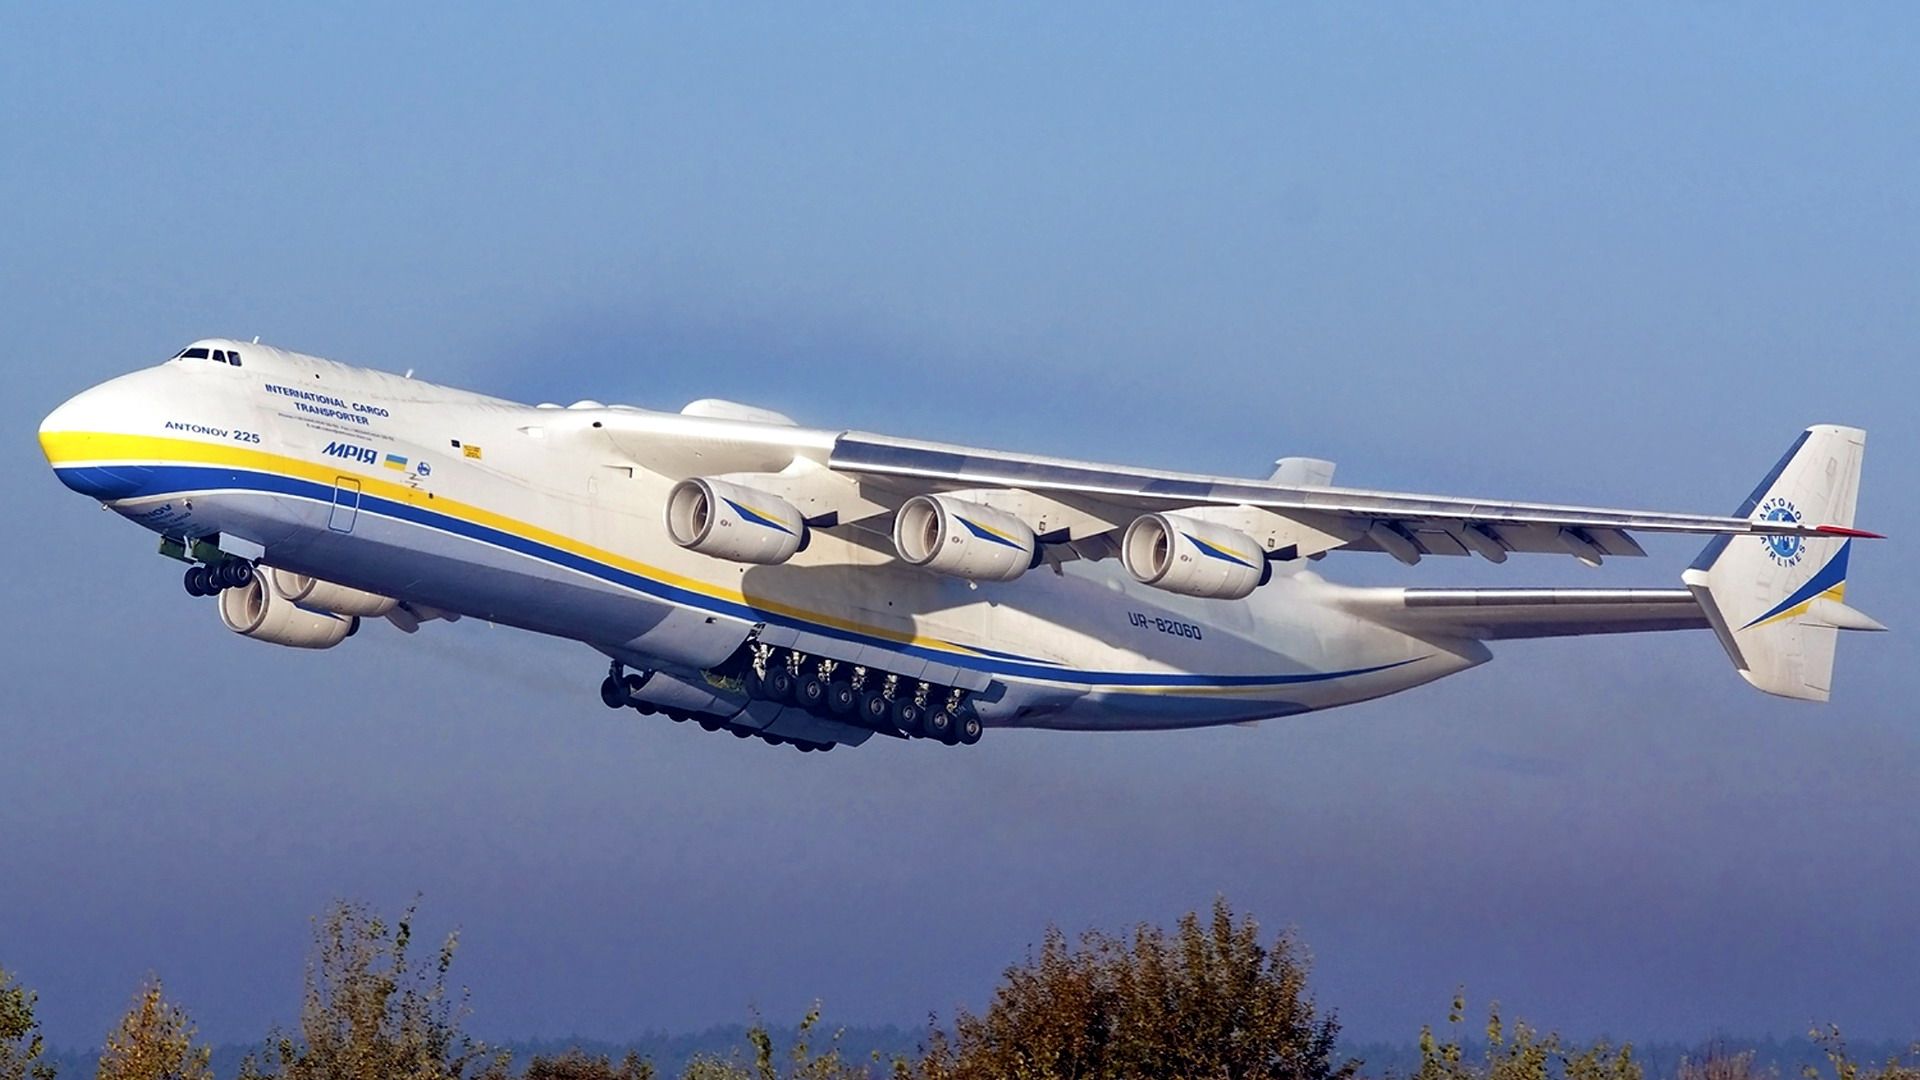 بزرگترین هواگرد باری اوکراینی به نام آنتونوف در آسمان